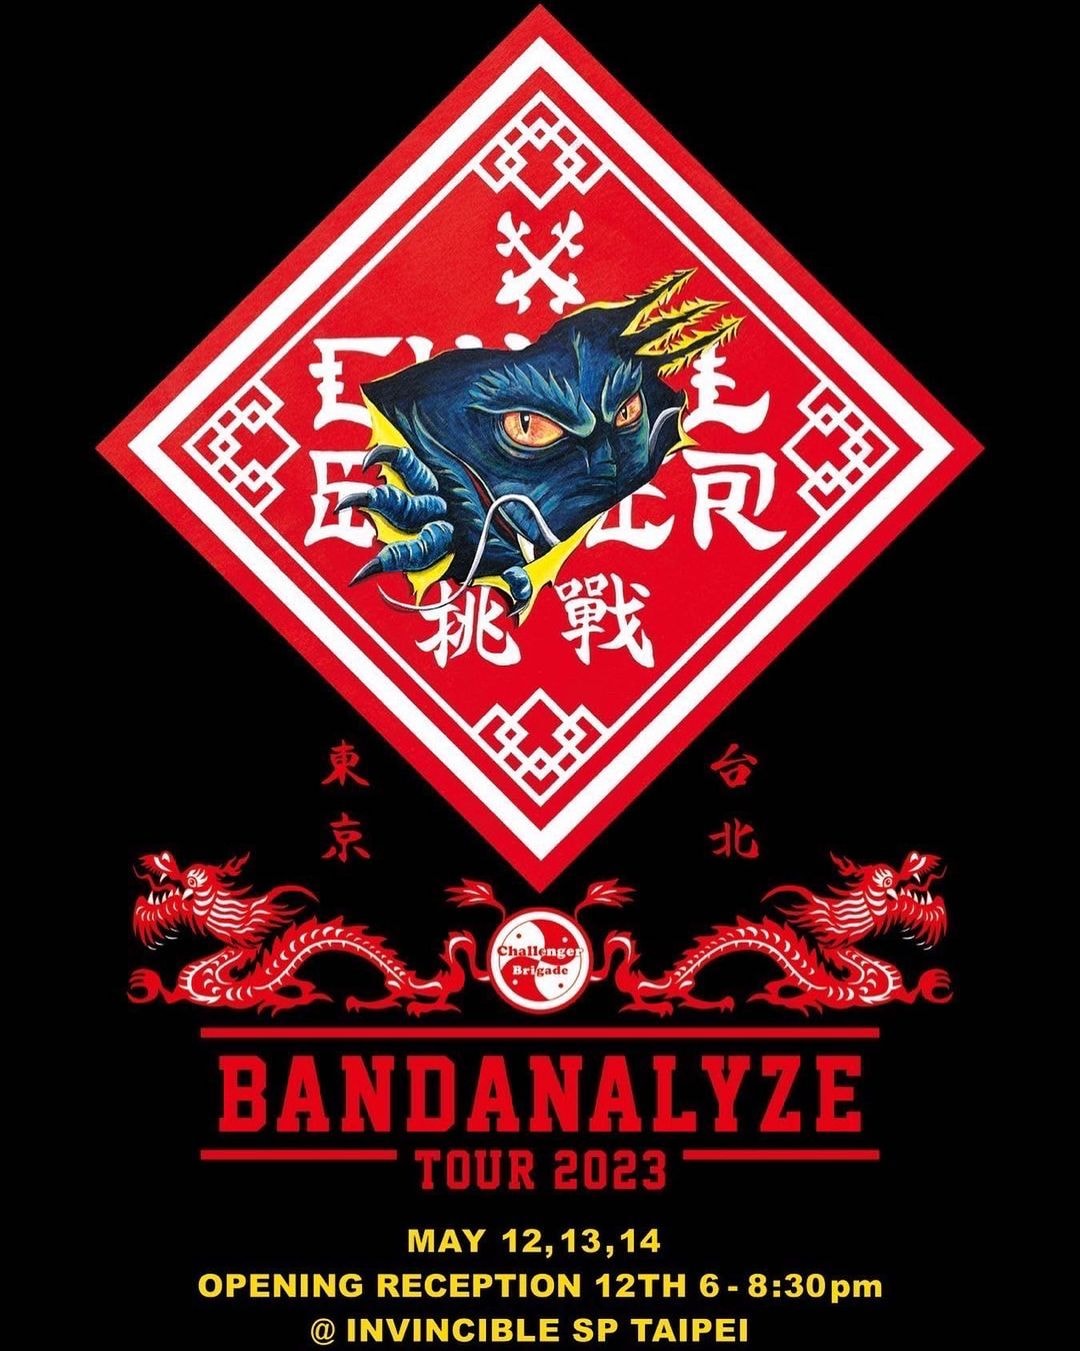 田口悟手繪藝術展覽「BANDANALYZE」即將登陸台北